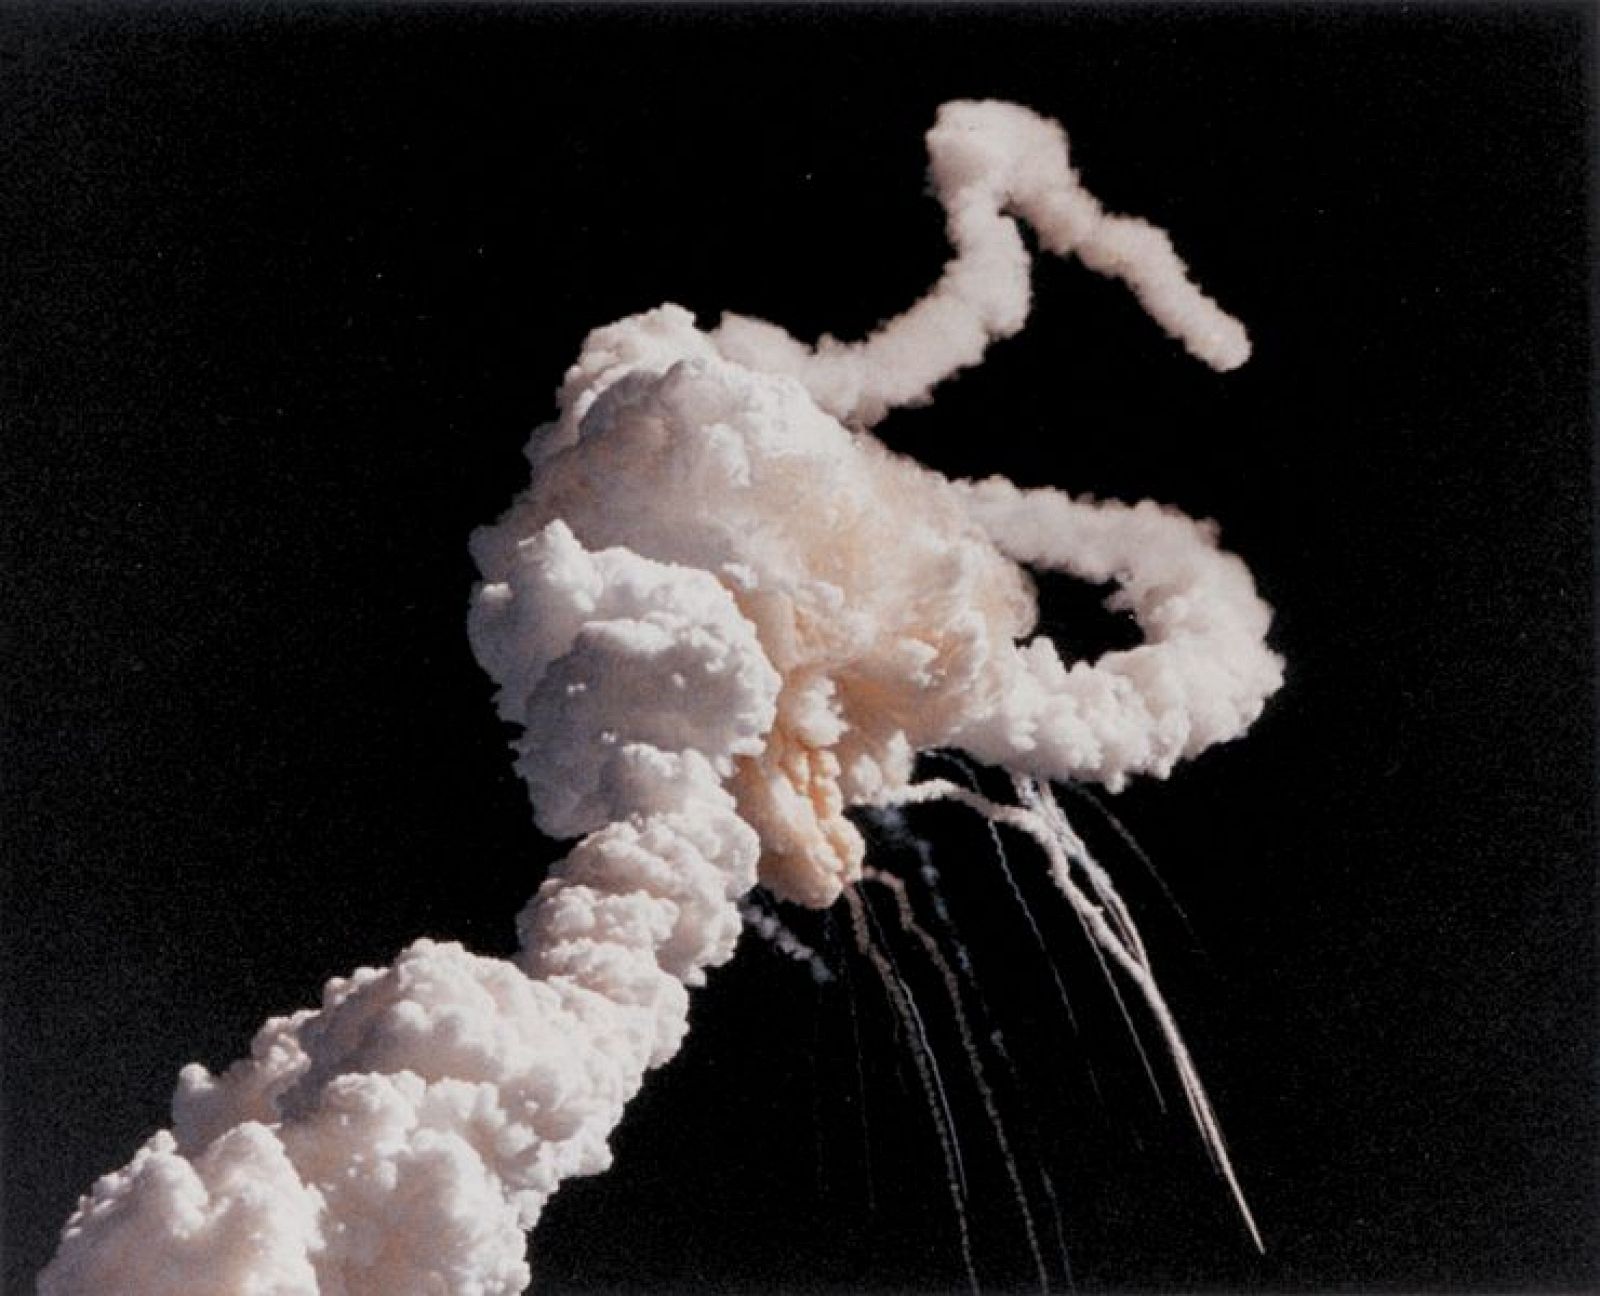 El transbordador espacial Challenger se desintegró 73 segundos después de despegar.